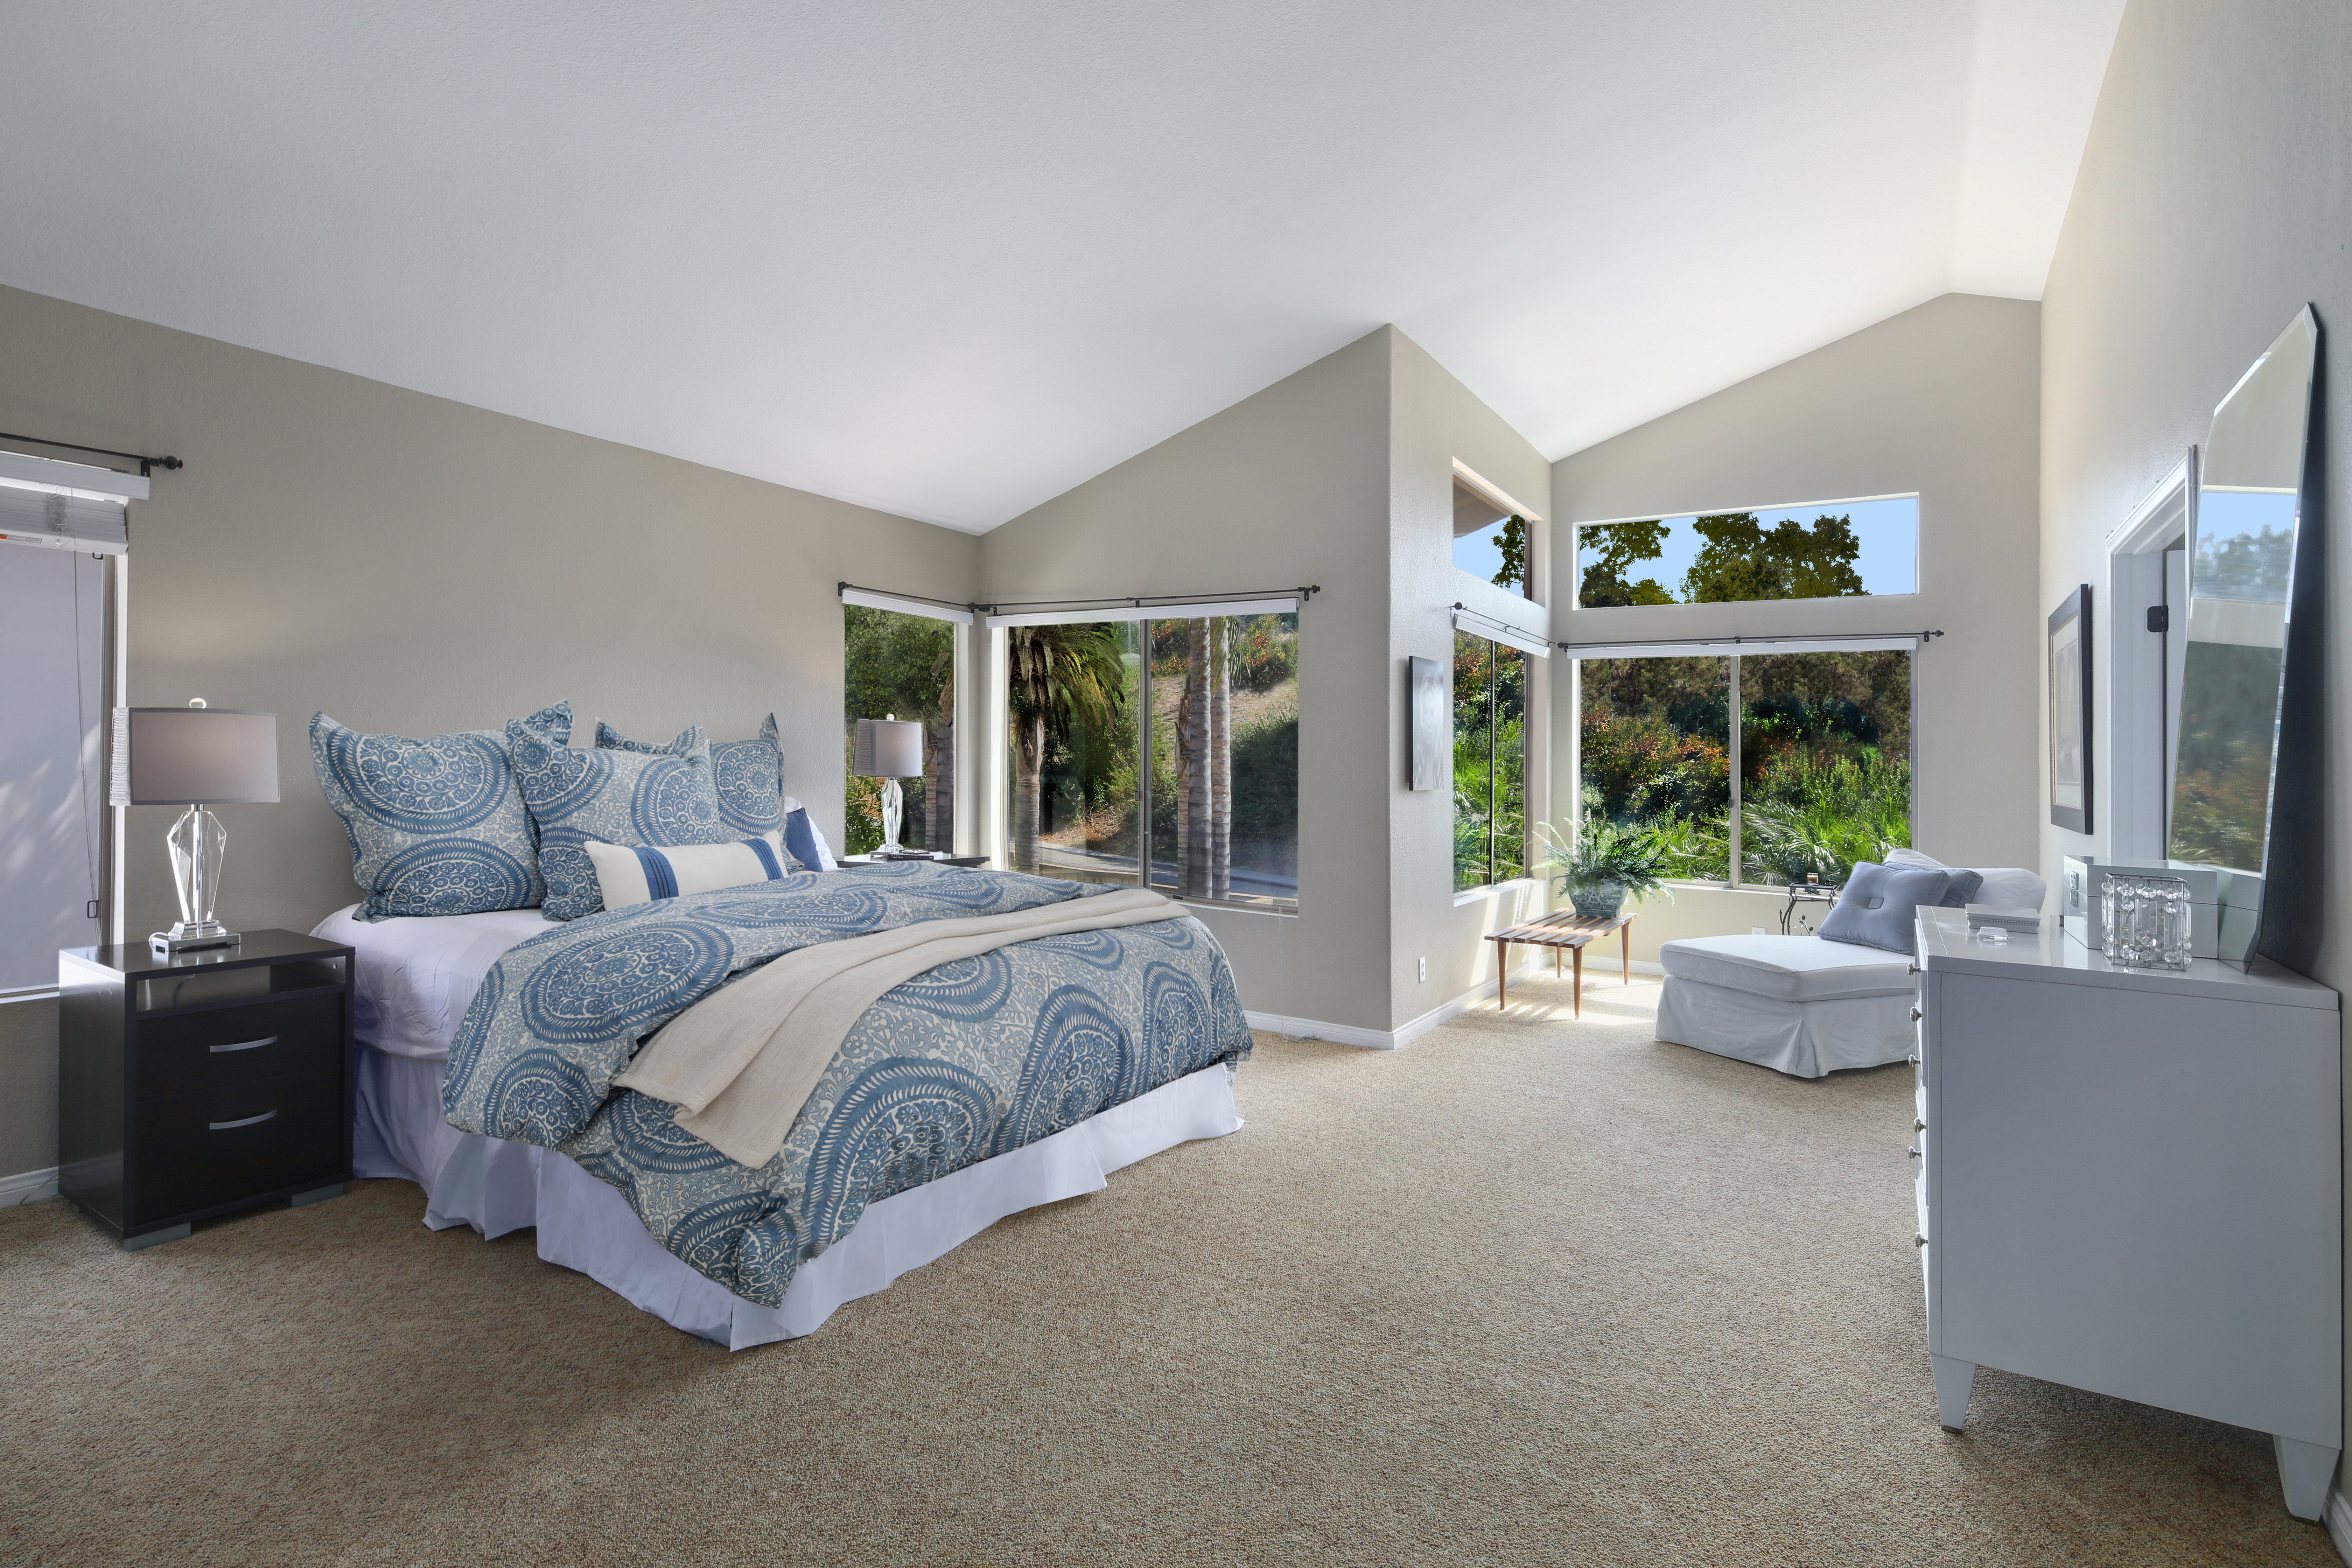 Спальни фото с: Спальни в морском стиле – 135 лучших фото-идей дизайна интерьера спальной комнаты